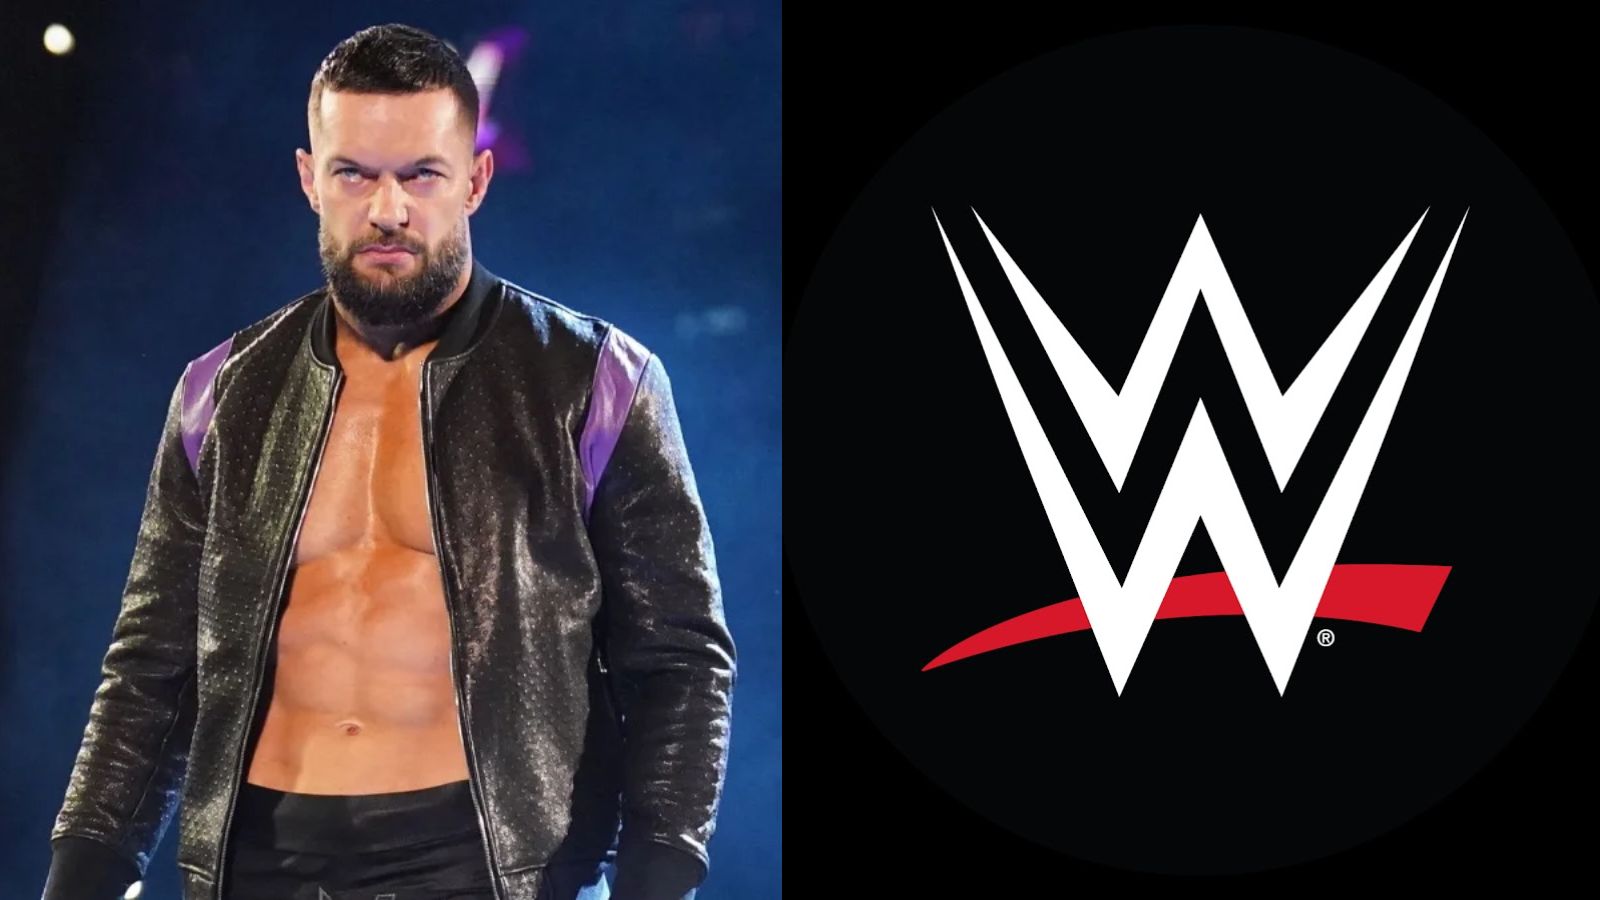 Plusieurs catcheurs de la WWE arrivent bientôt en fin de contrat.